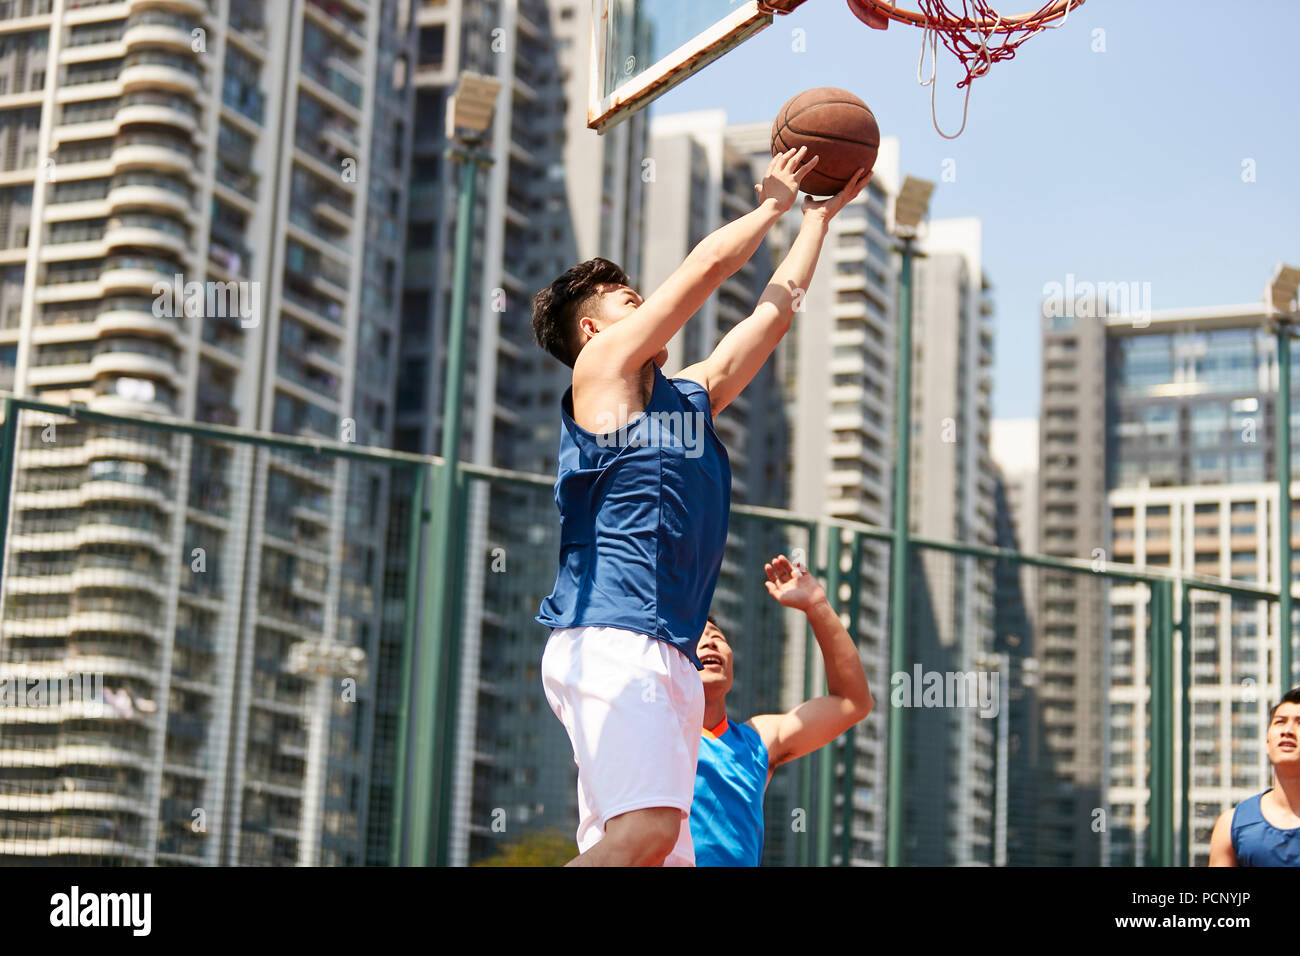 Jeune joueur de basket-ball de l'Asie à la hausse pour un layup tout en adversaire de jouer la défense. Banque D'Images